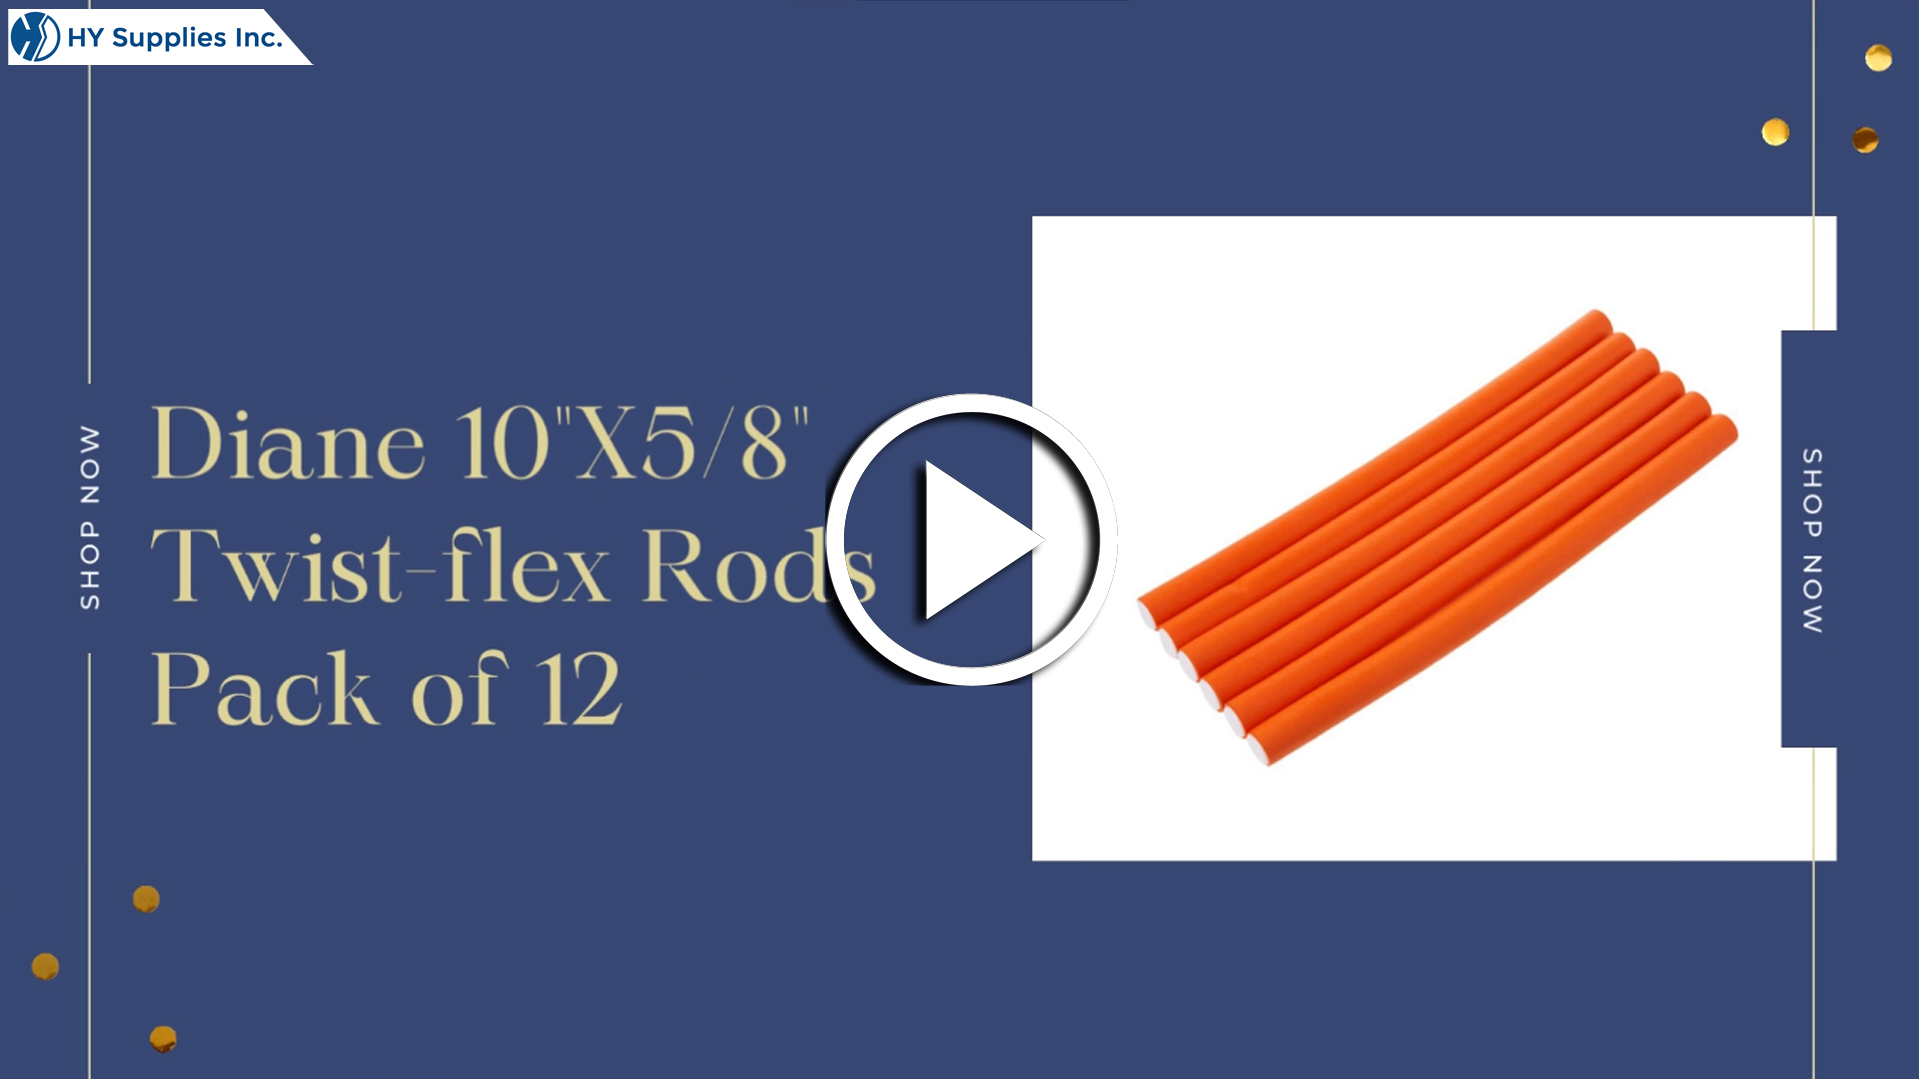 Diane 10" X 5/8" Twist-flex Rods - Pack of 12